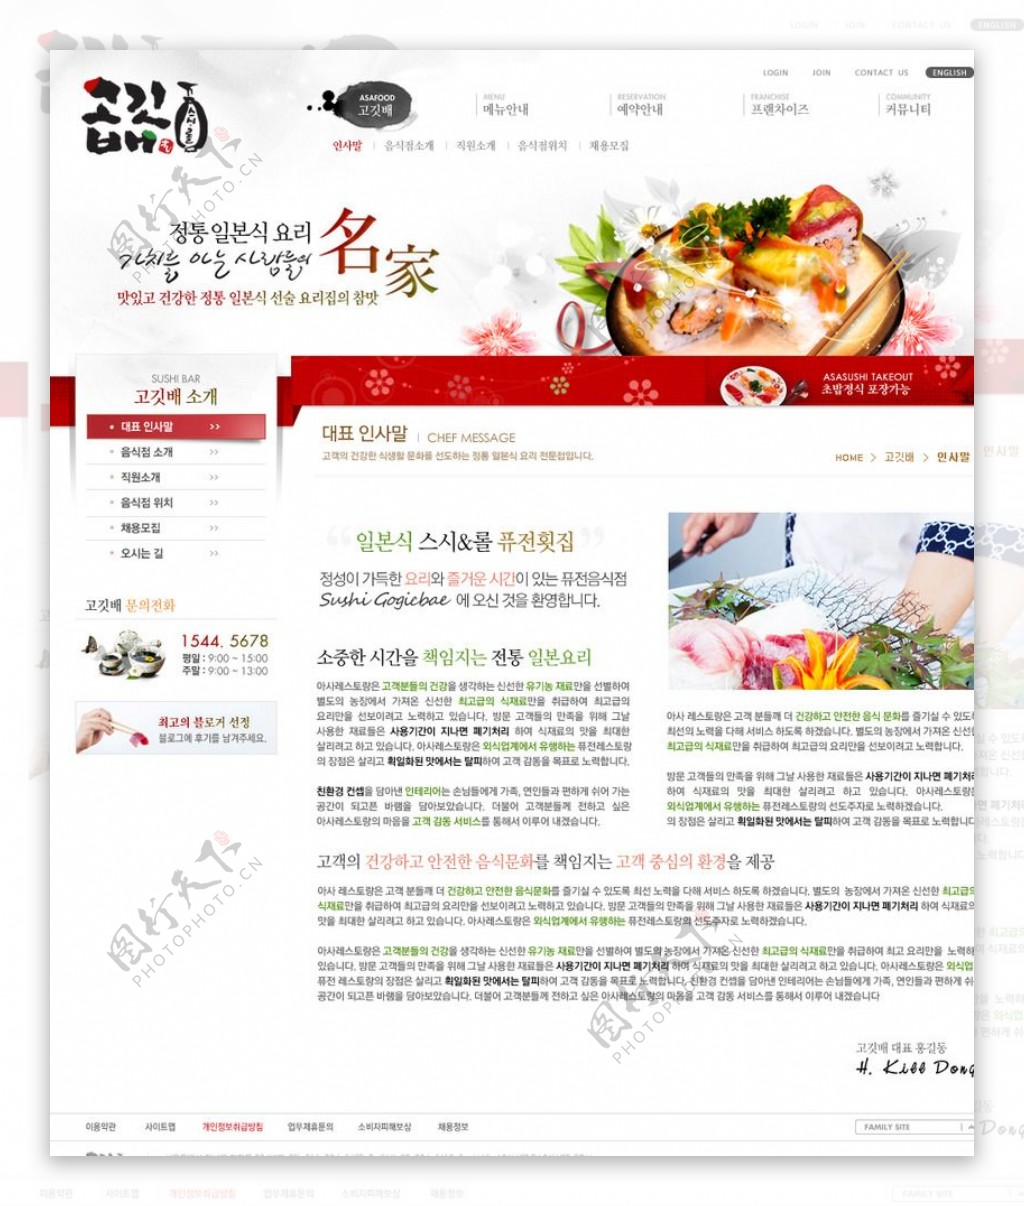 餐厅饭店菜品网页设计图片